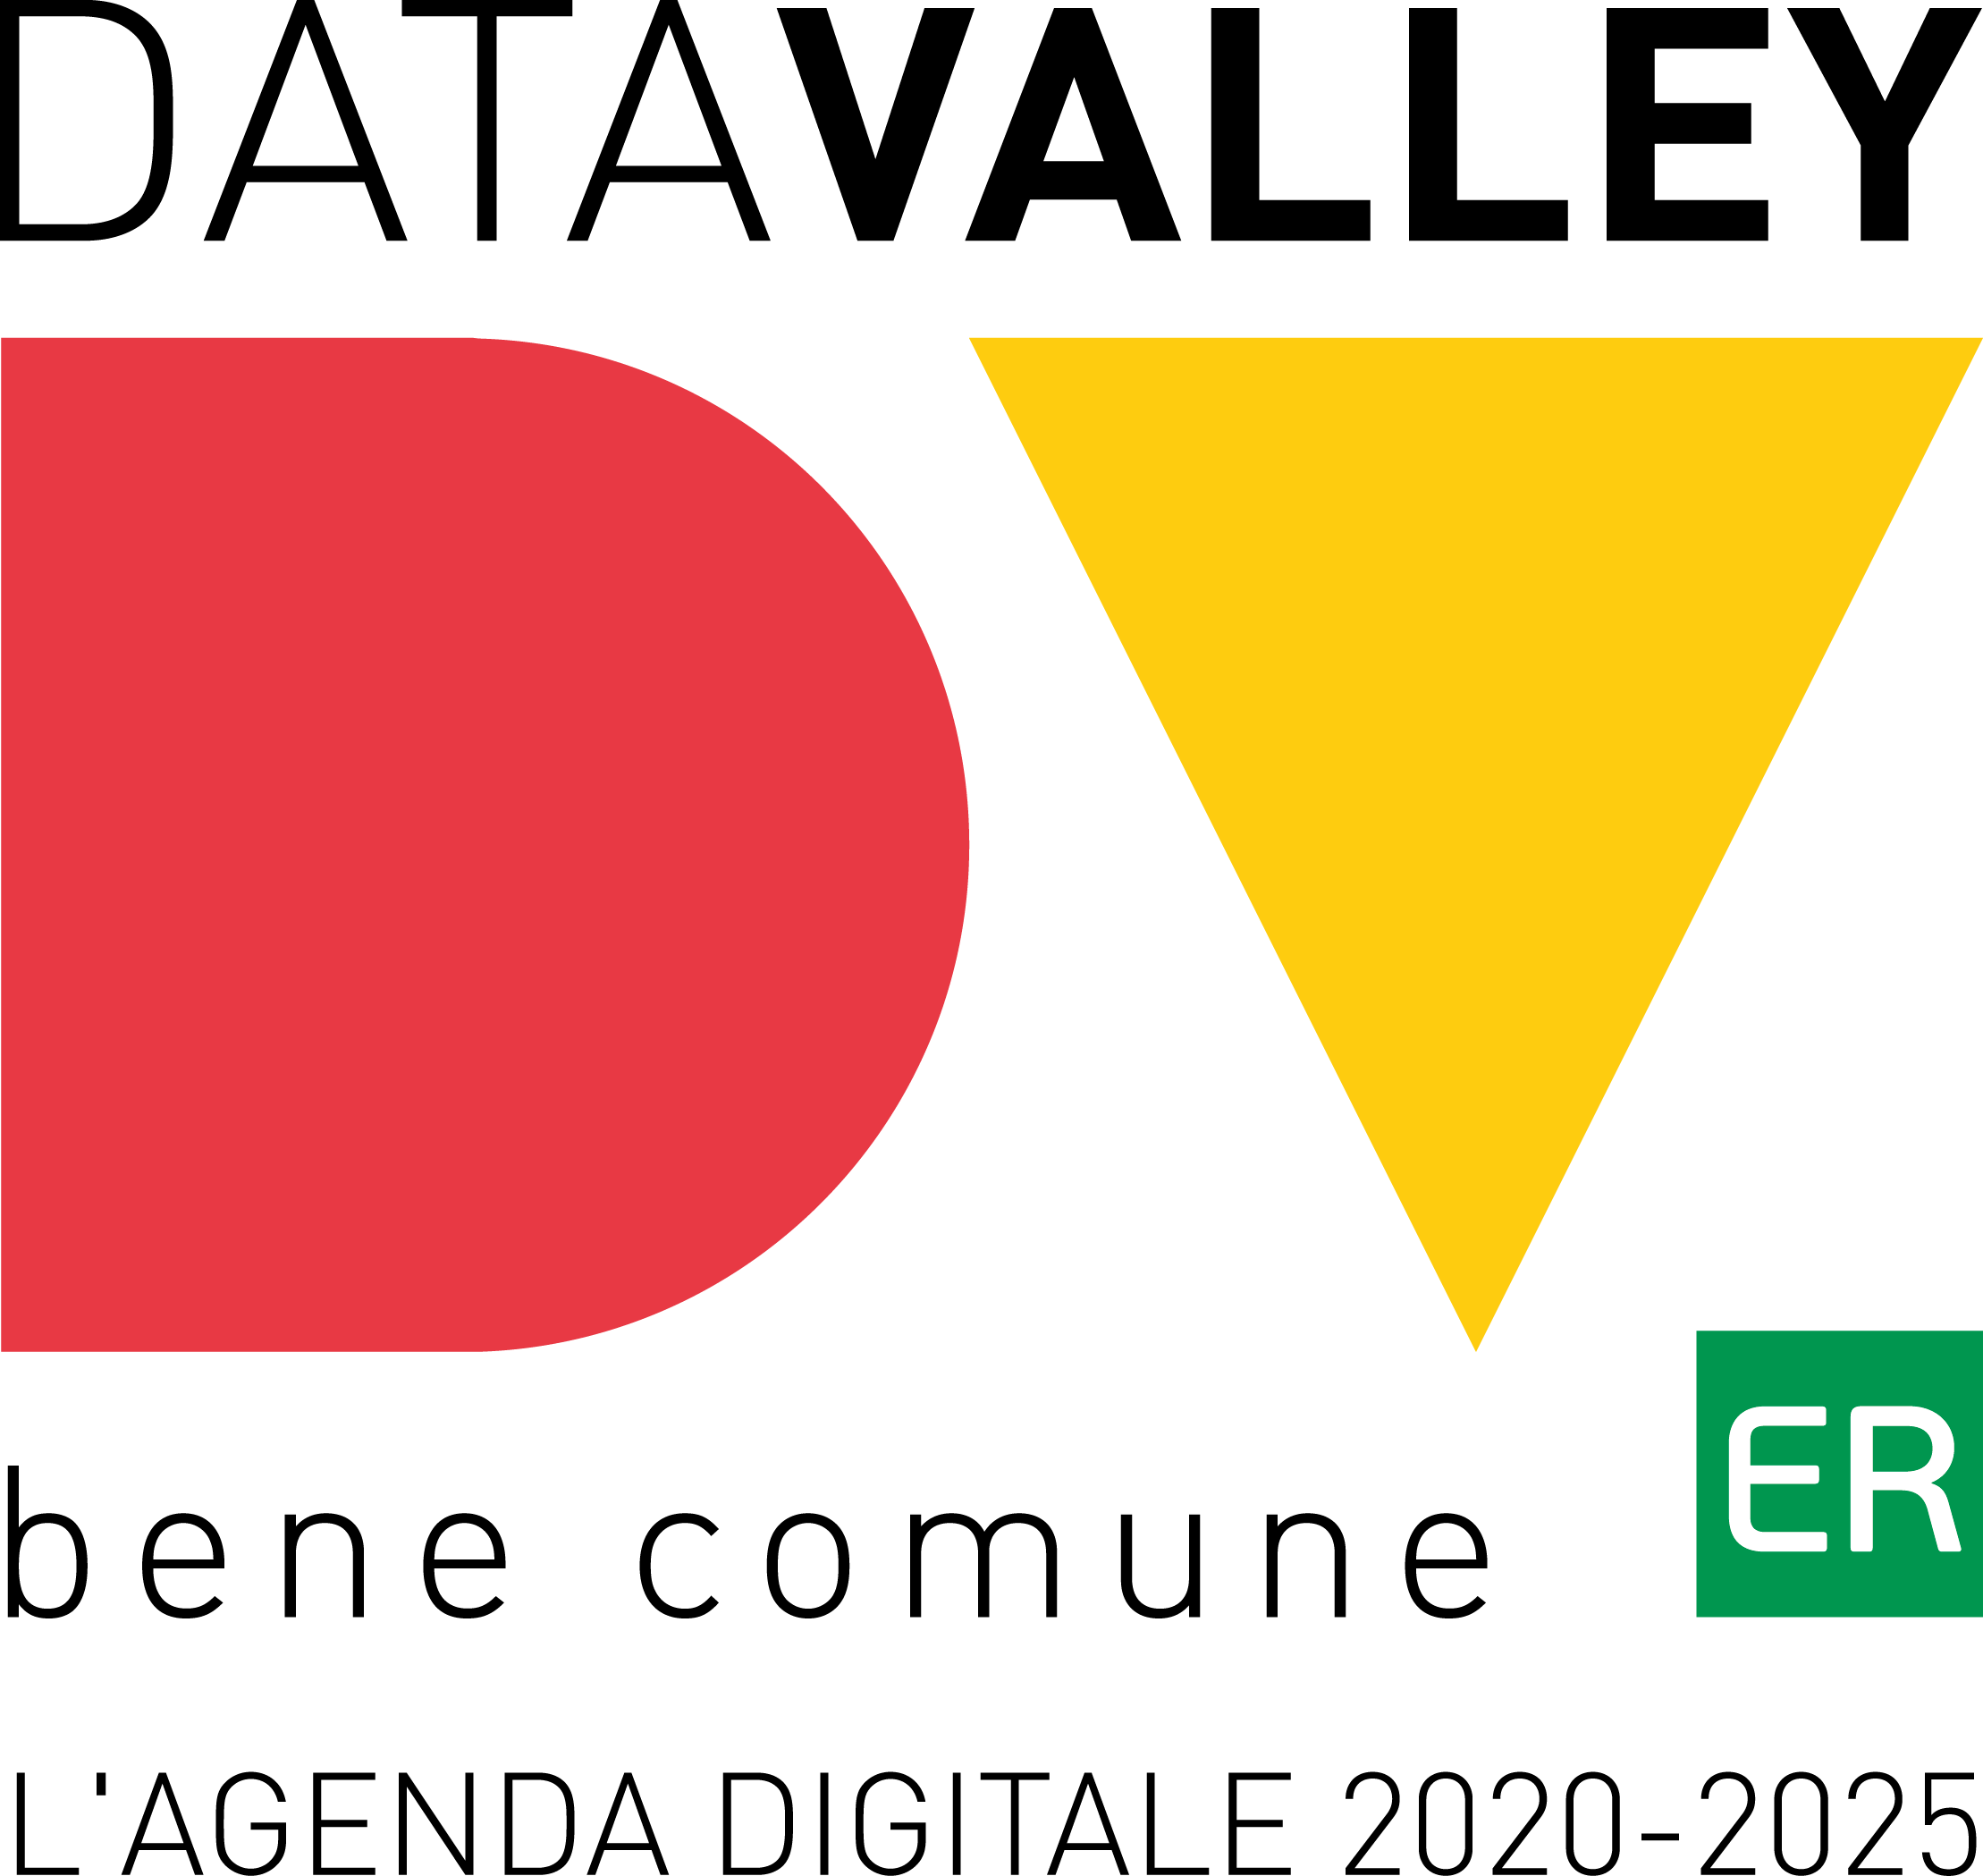 Data Valley Bene Comune: il logo